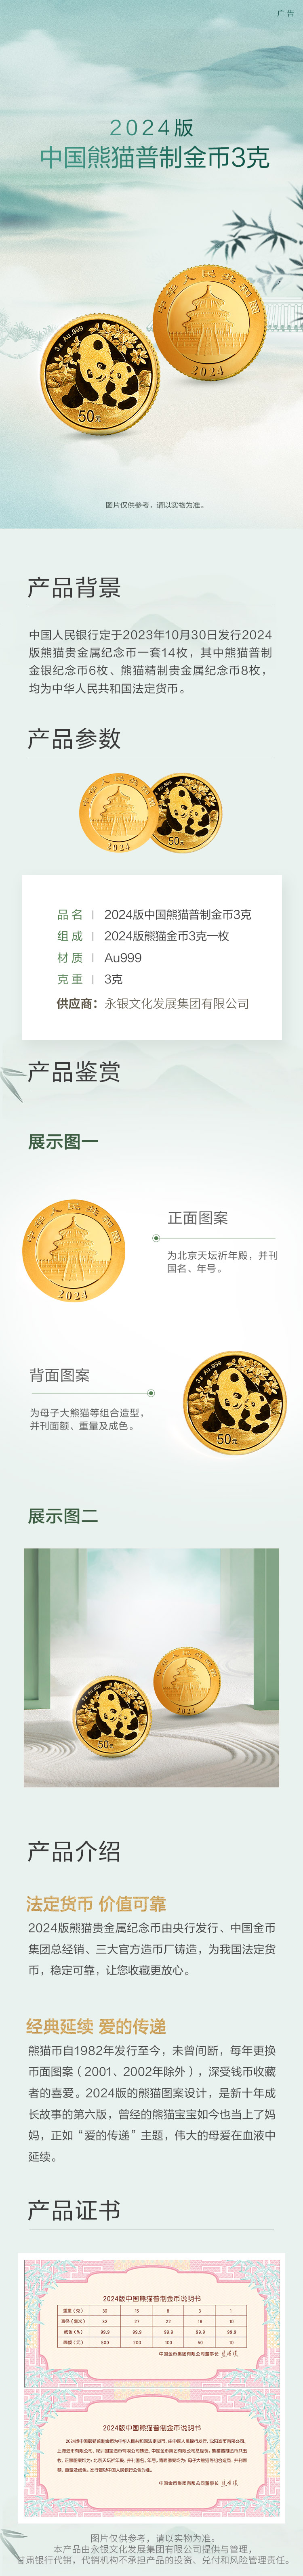 2024版中国熊猫普制金币3克详情页图.jpg